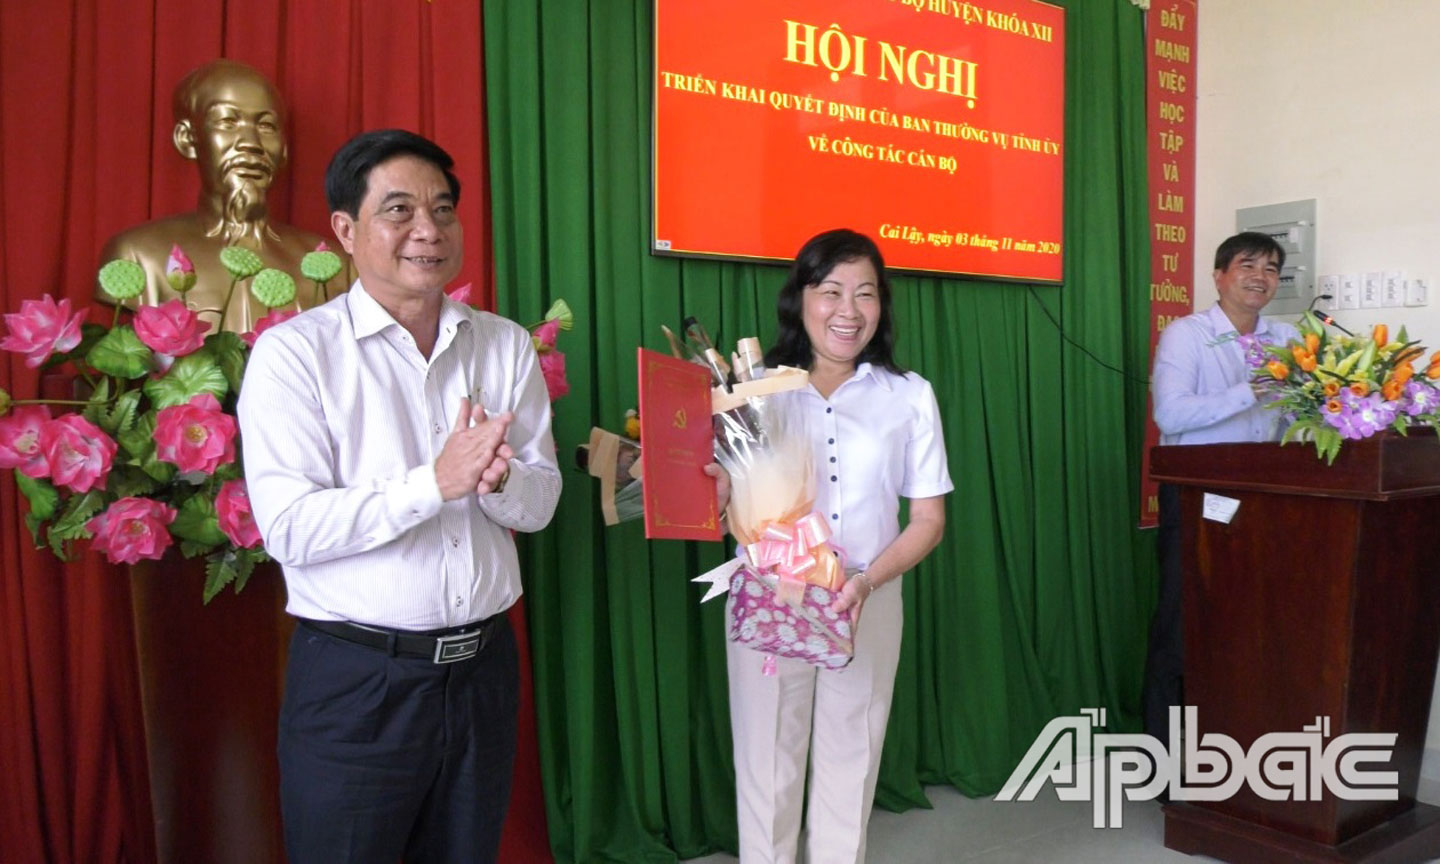 Đồng chí Nguyễn Văn Nhã trao Quyết định nghỉ hưu cho đồng chí Nguyễn Thị Hồng Tuyến.